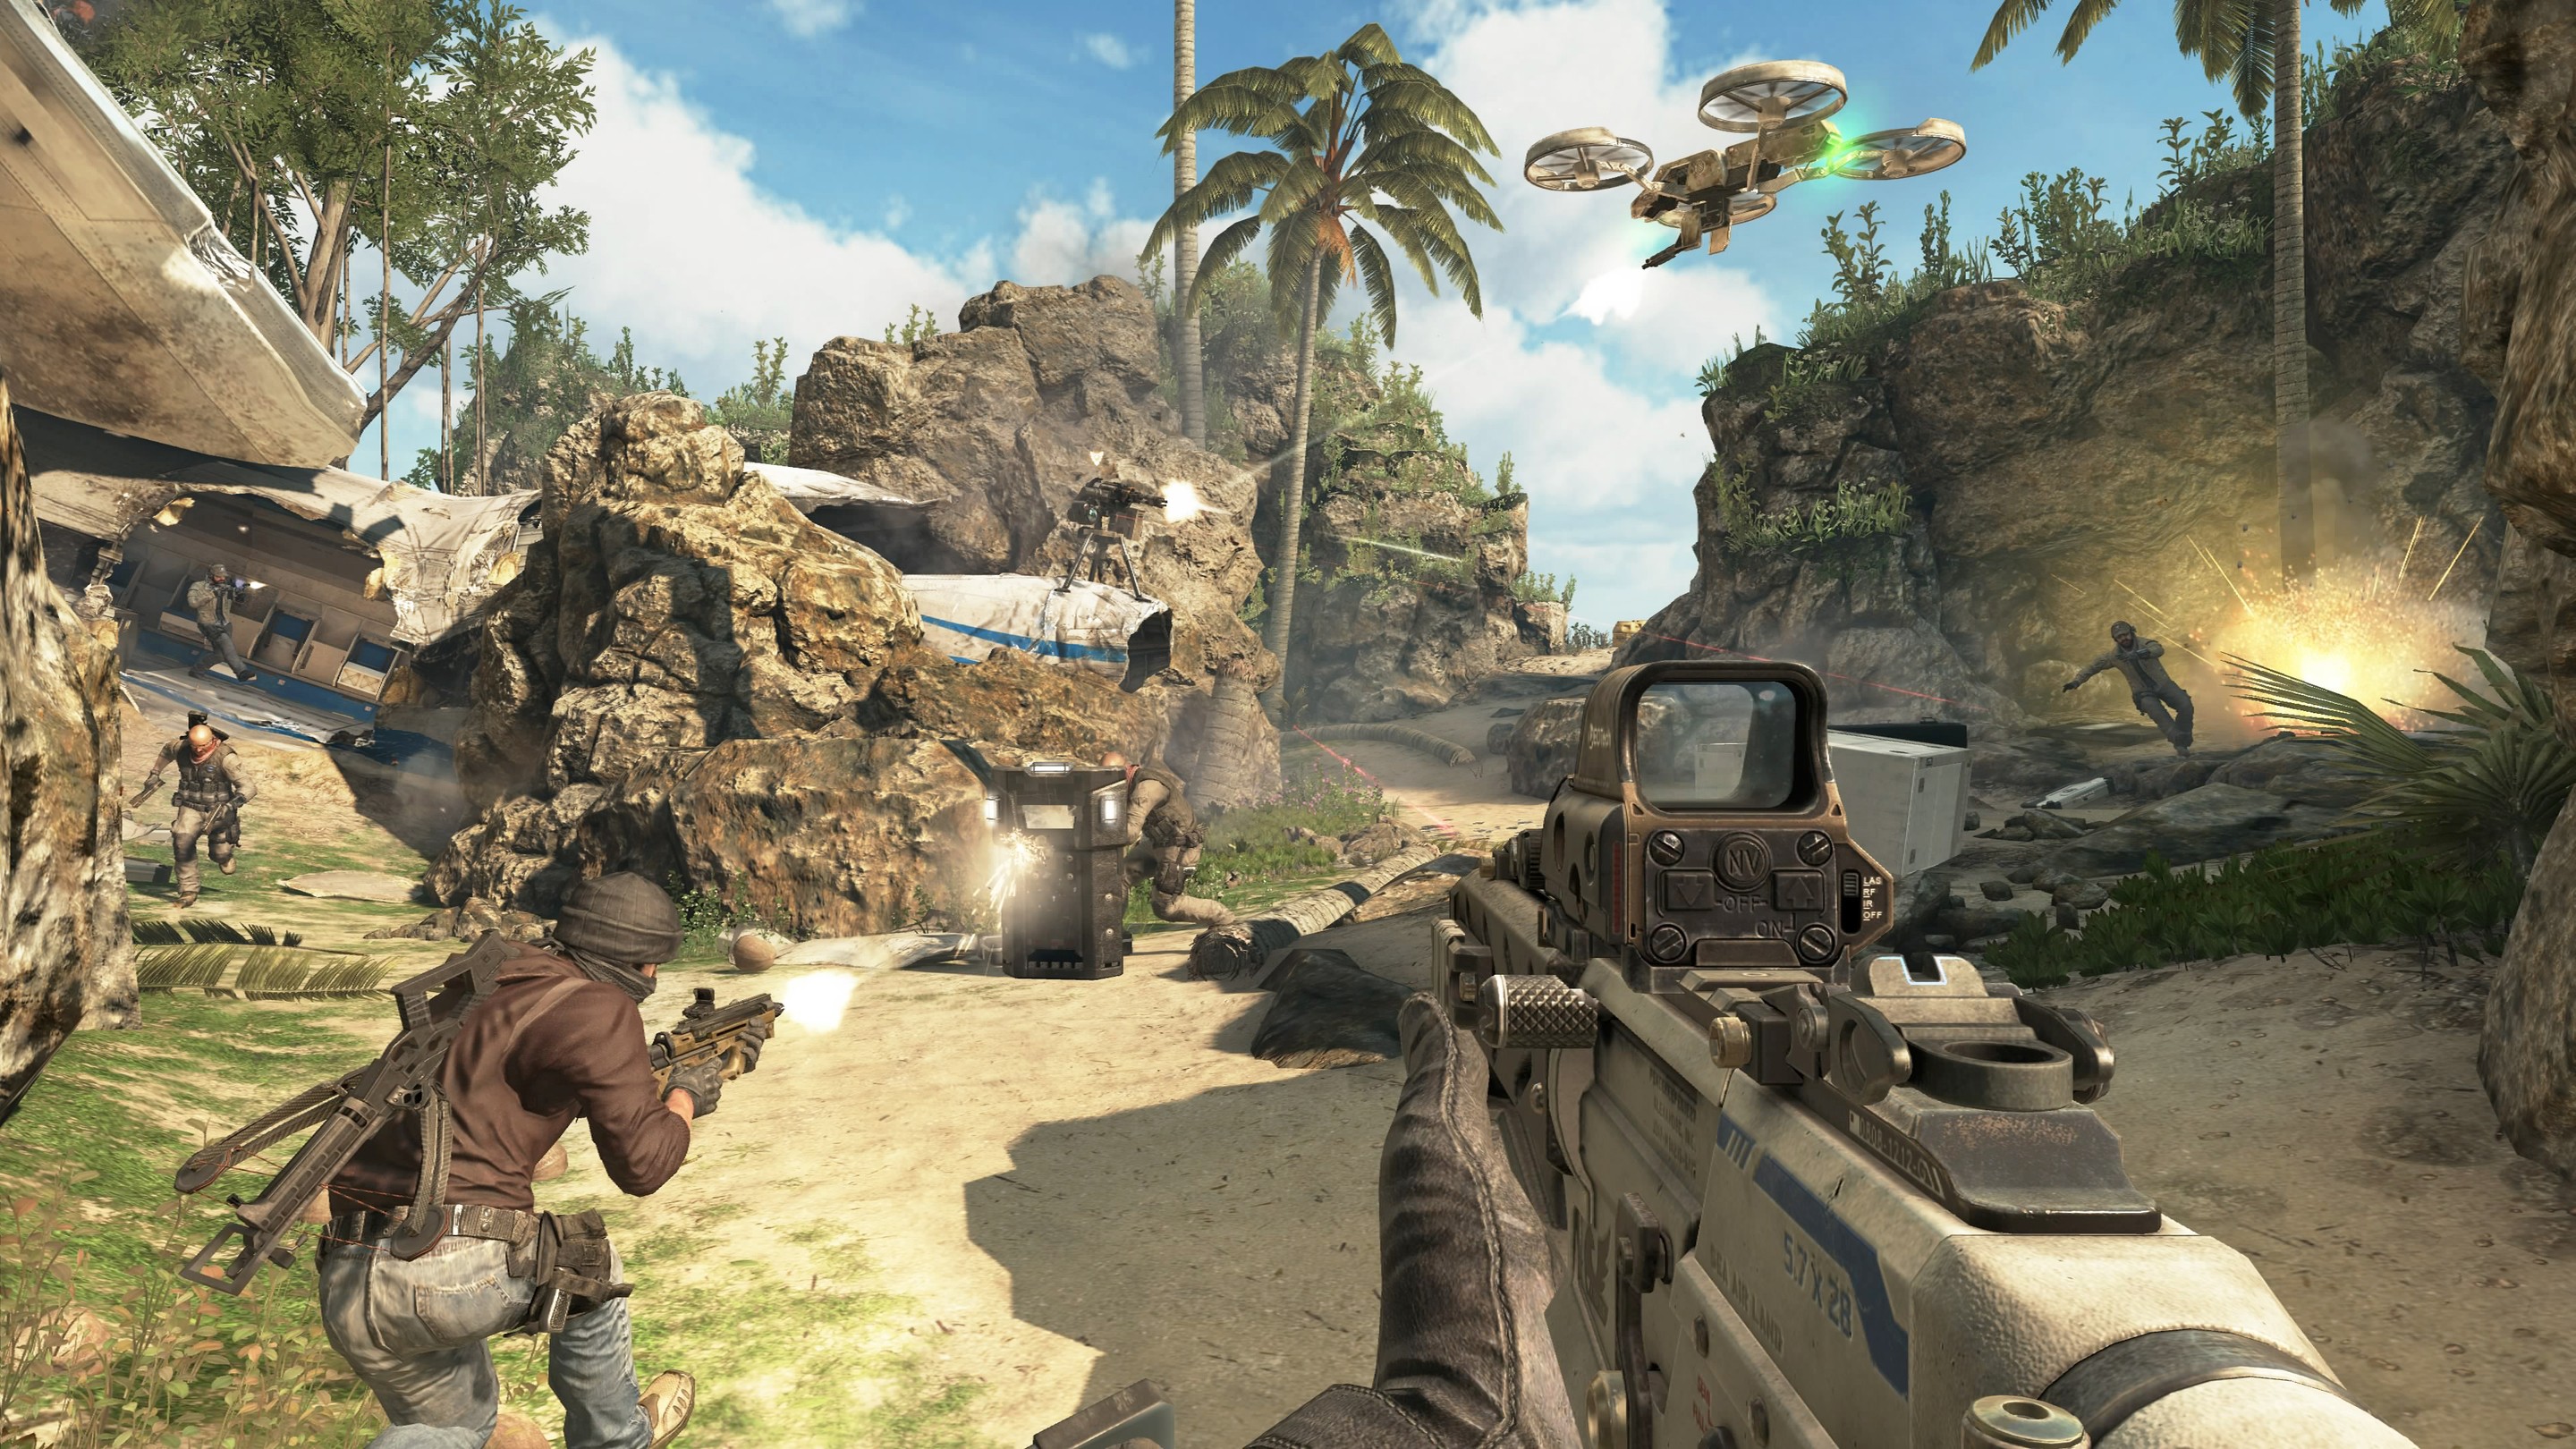 Buy Call of Duty: Black Ops II Steam